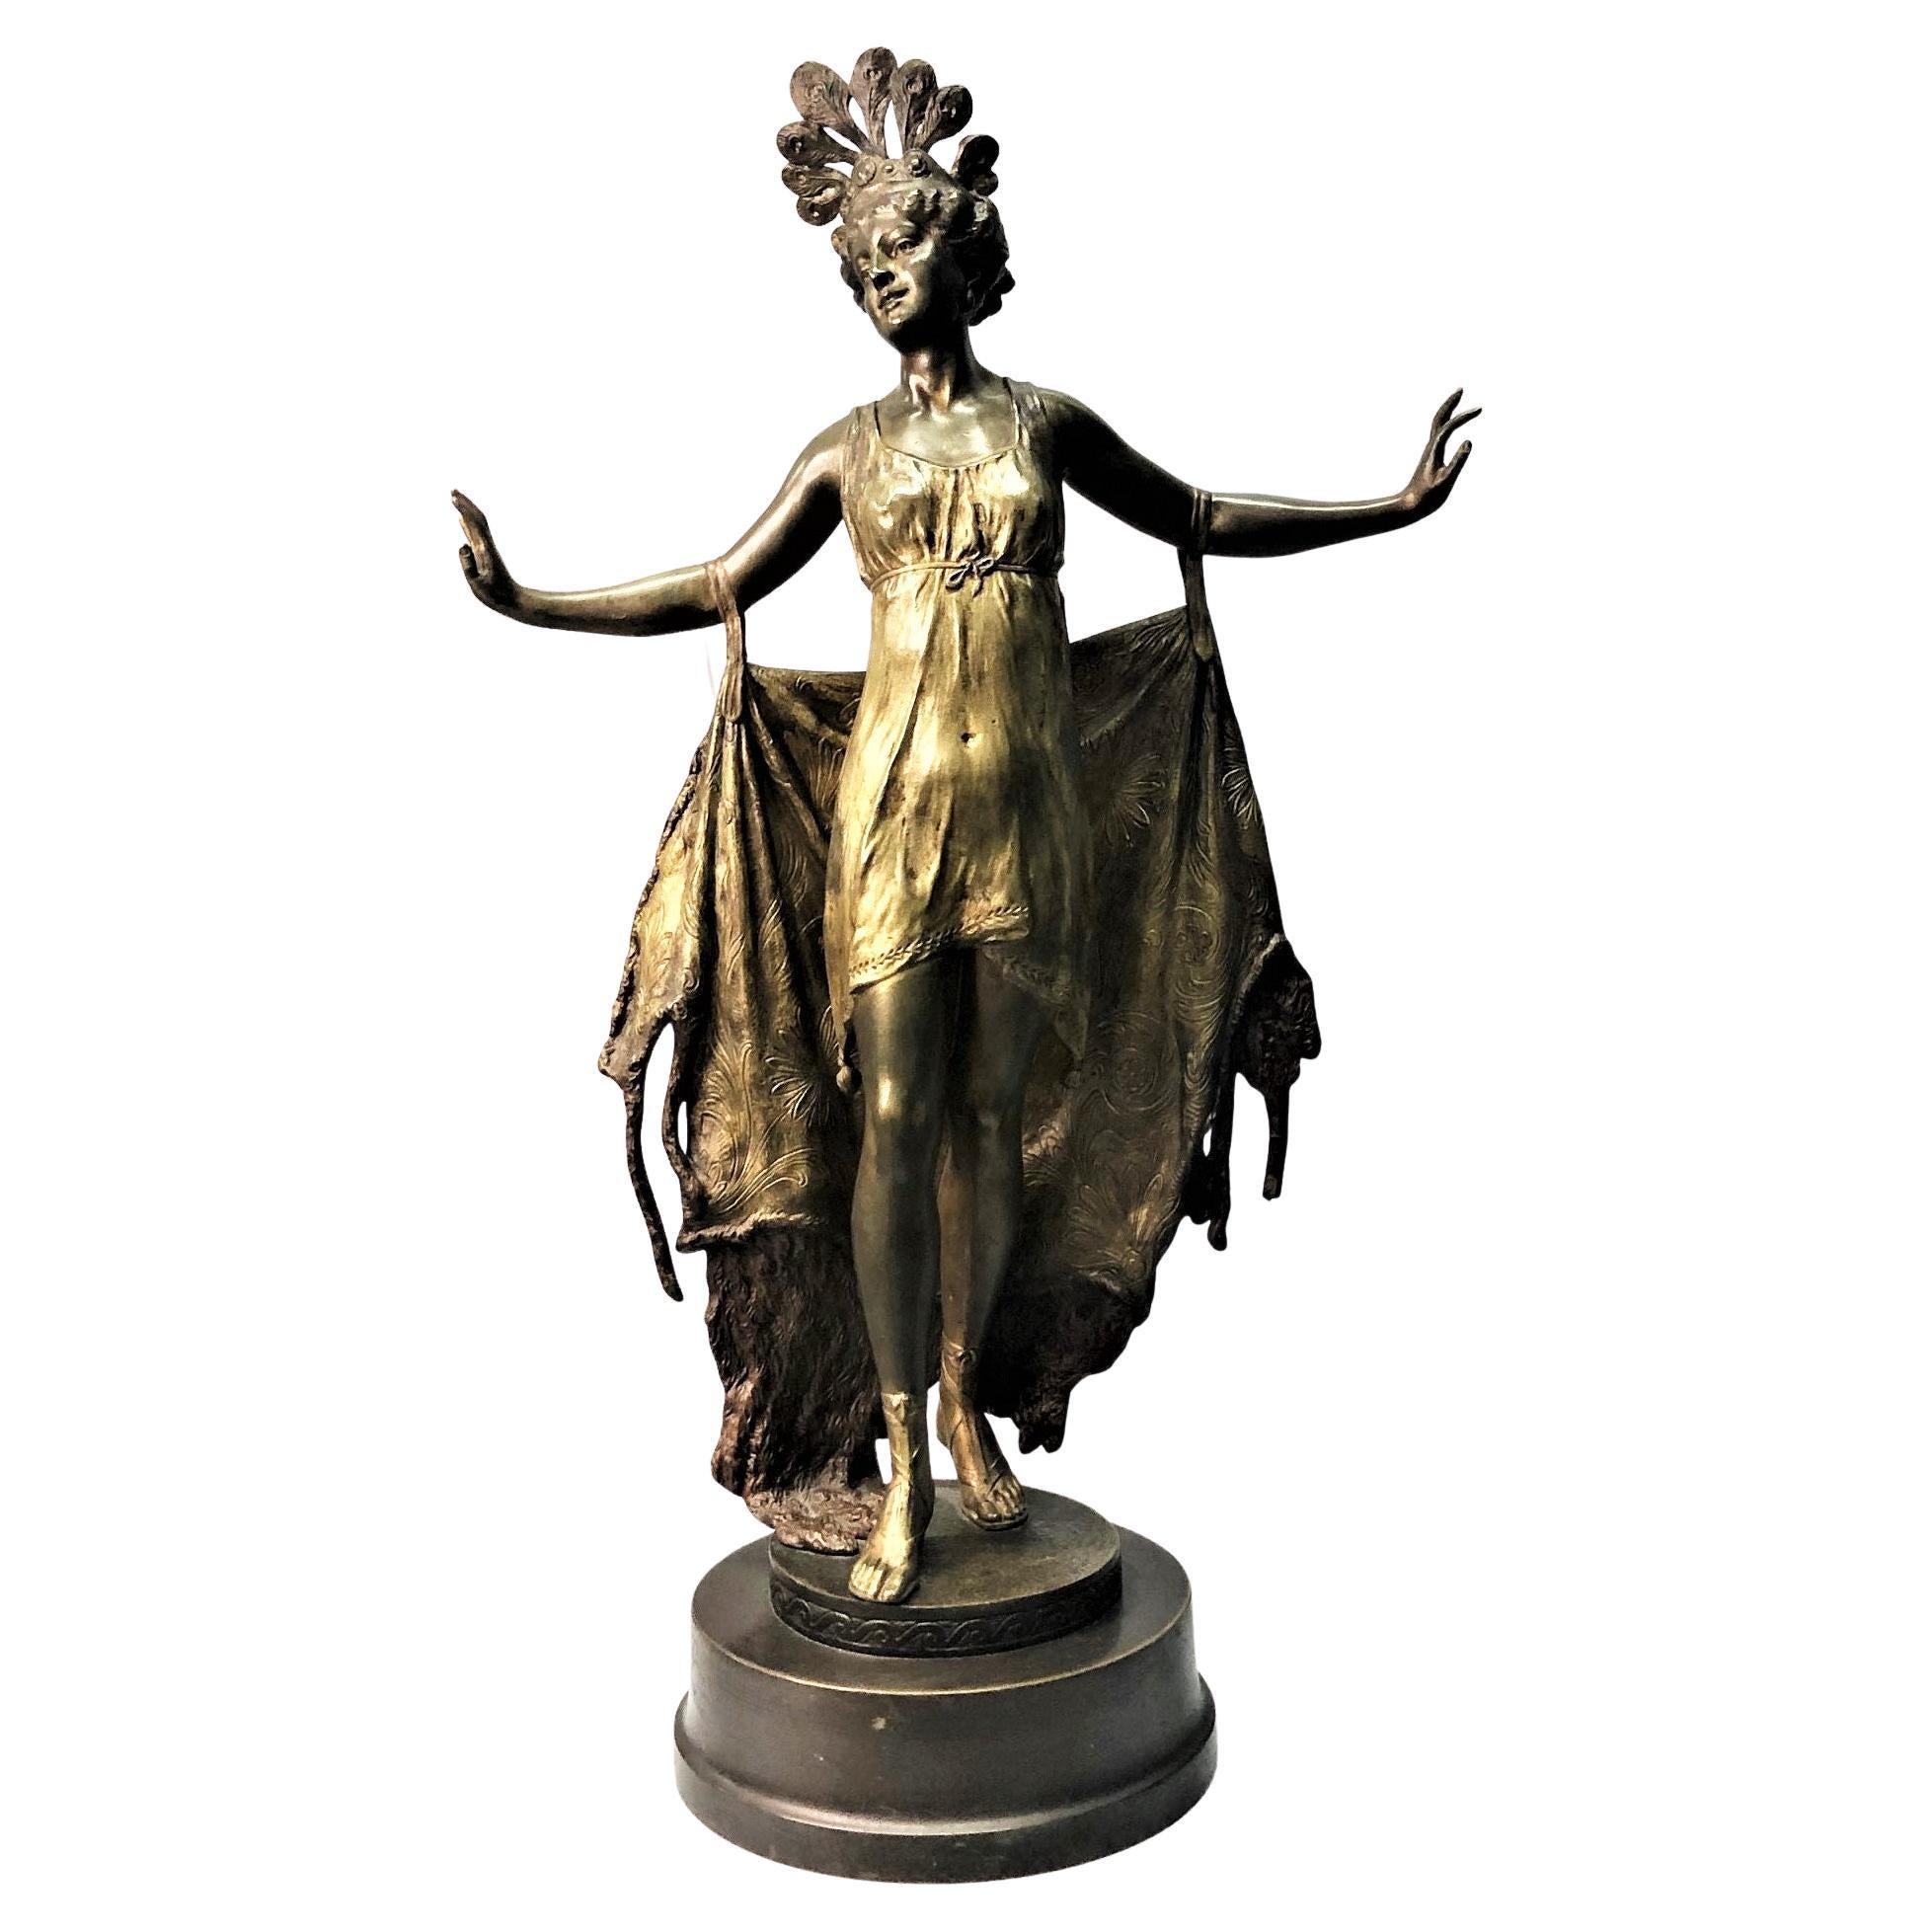 Bronzeskulptur eines erotischen Tänzers, Wiener Bronzeskulptur, ca. 1900, von Franz Xaver Bergmann